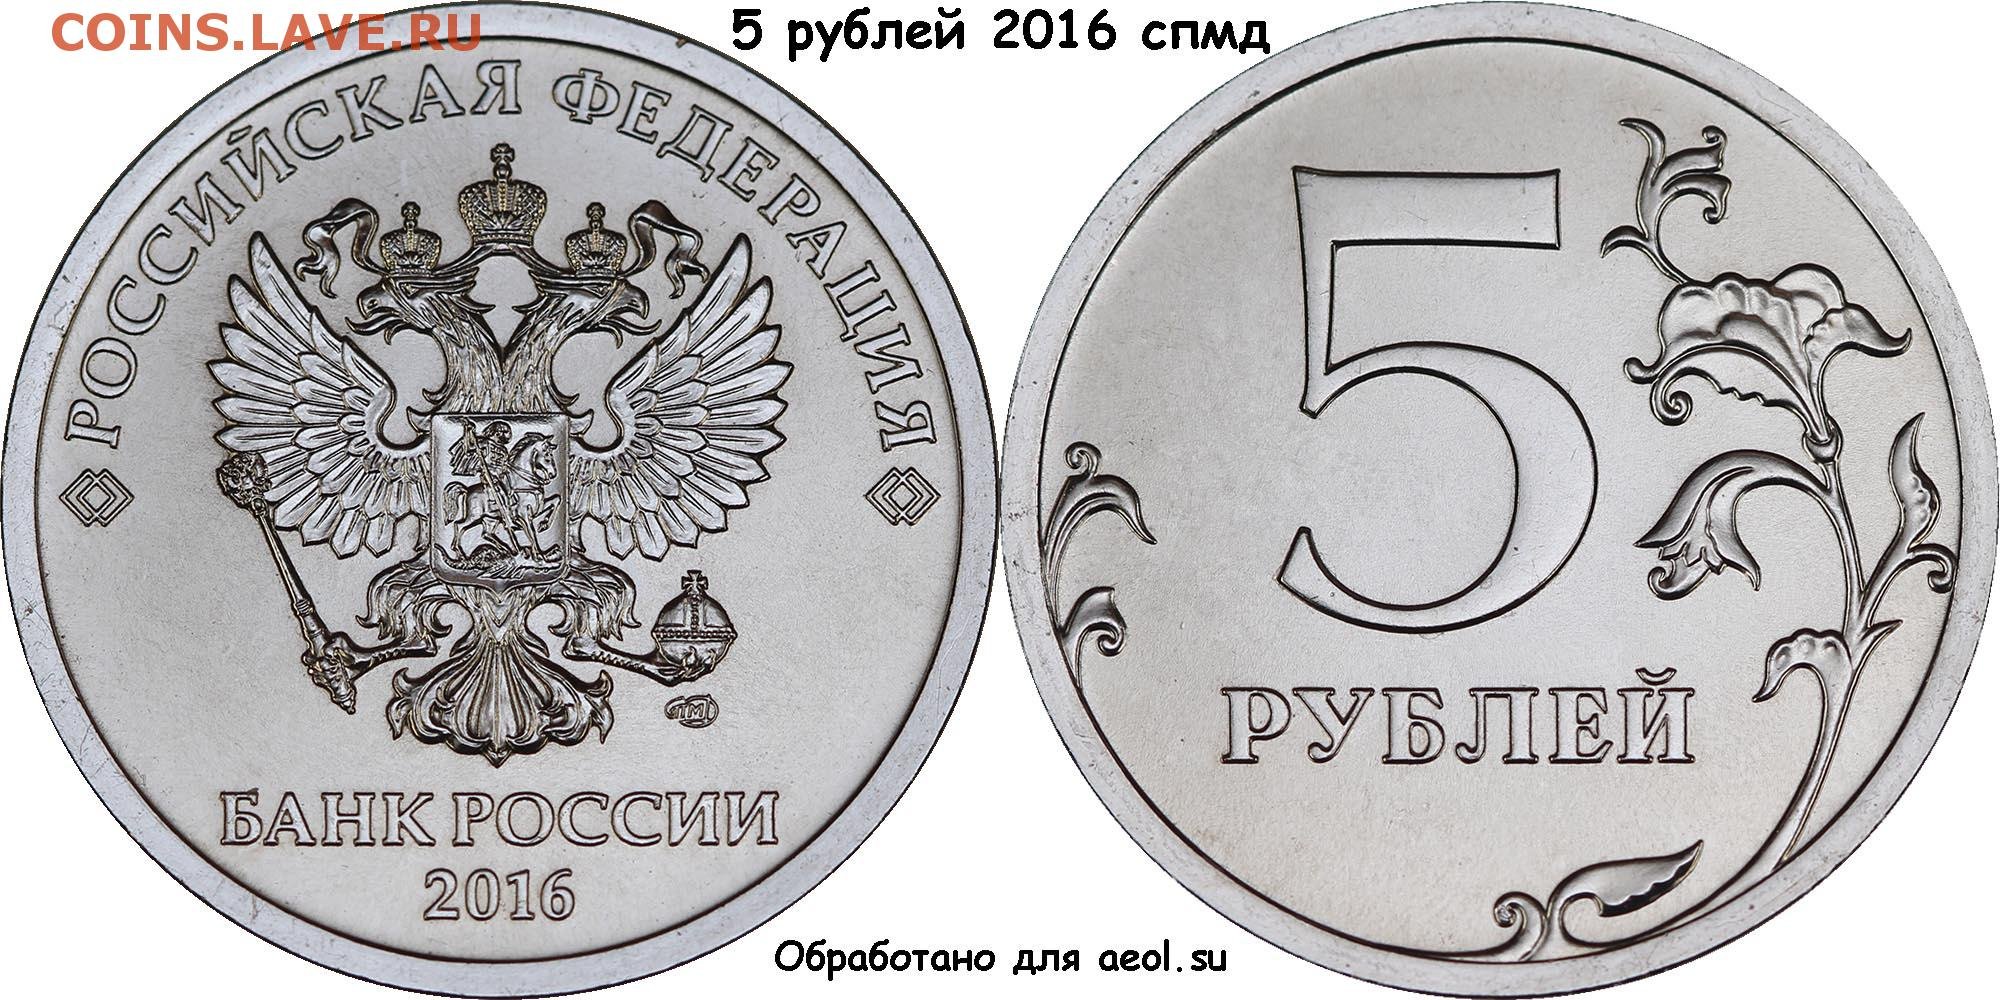 Рубли банка россии. 5 Рублей 2016 года СПМД. Монета 1 рубль 2016 года СПМД. 5 Рублевые монеты СПМД. 5 Рублей 2016 СПМД.